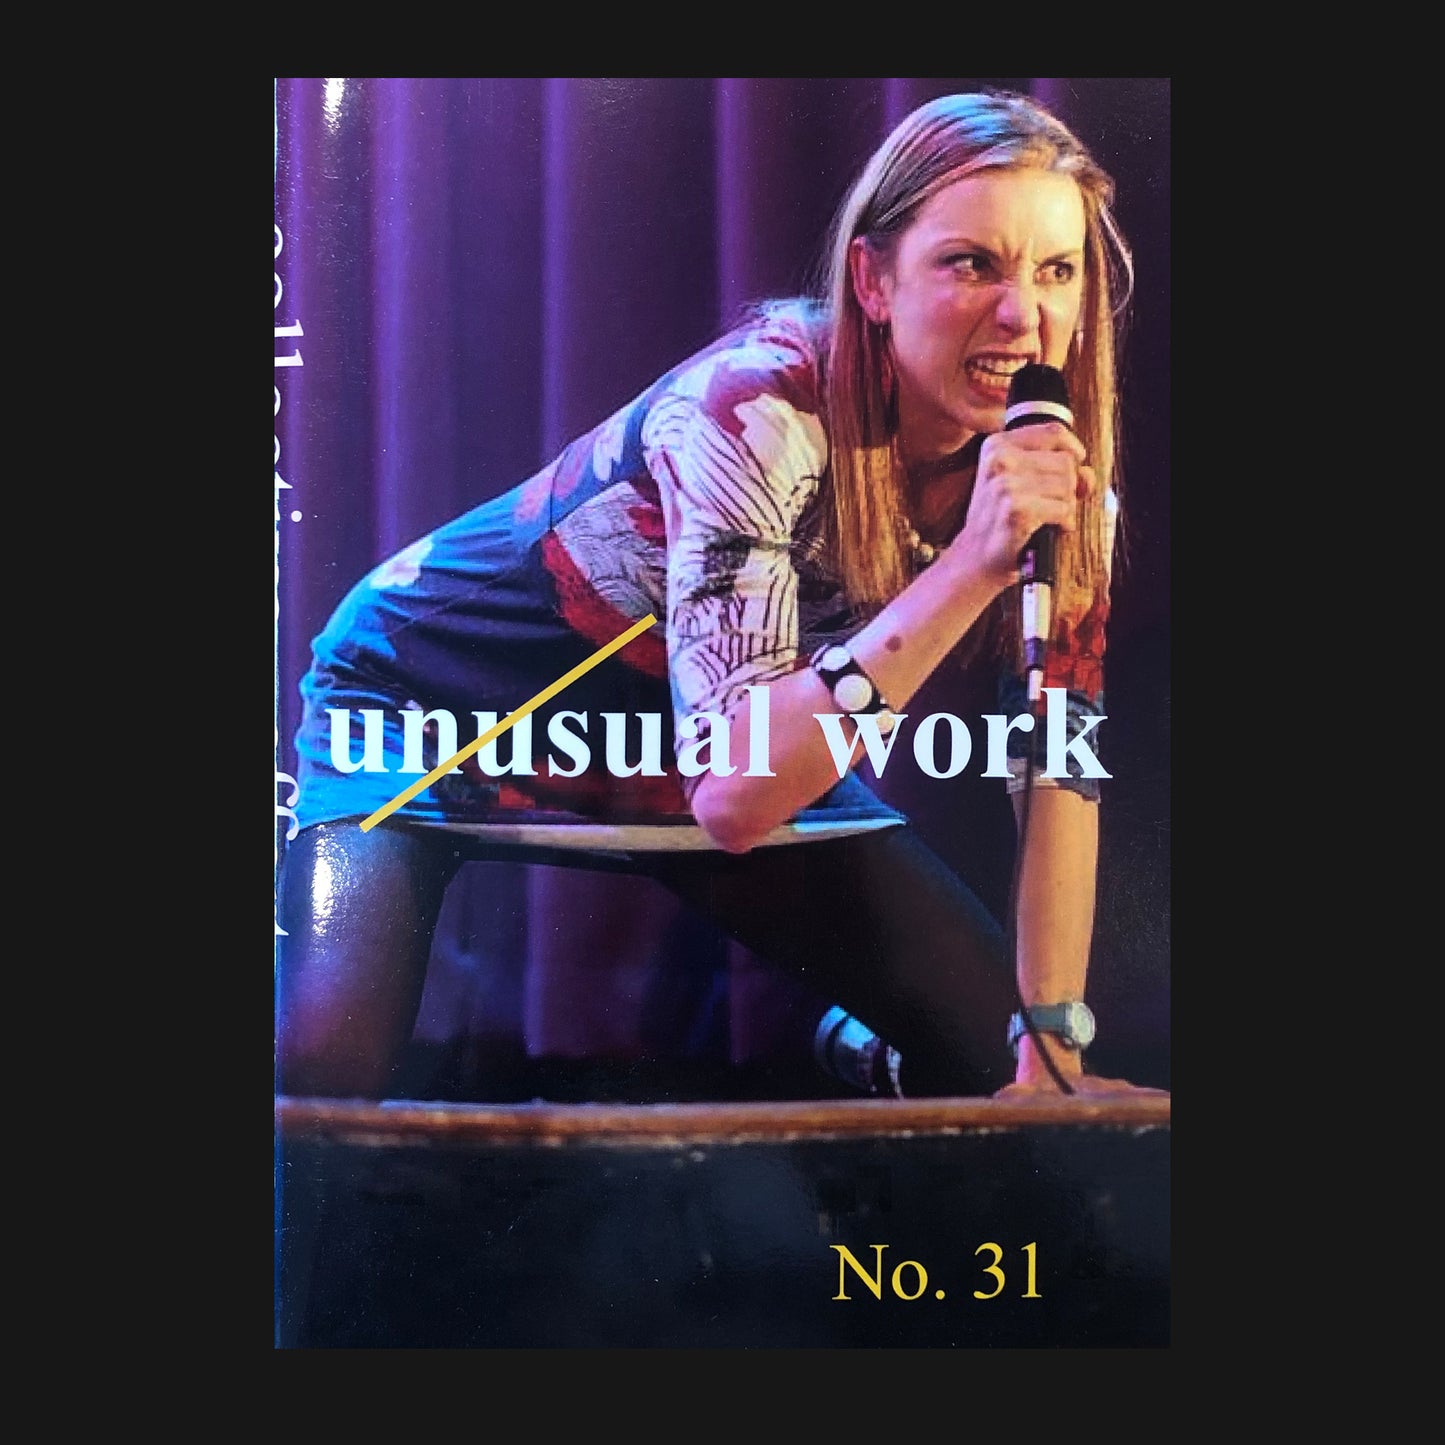 UNUSUAL WORK - NO. 31